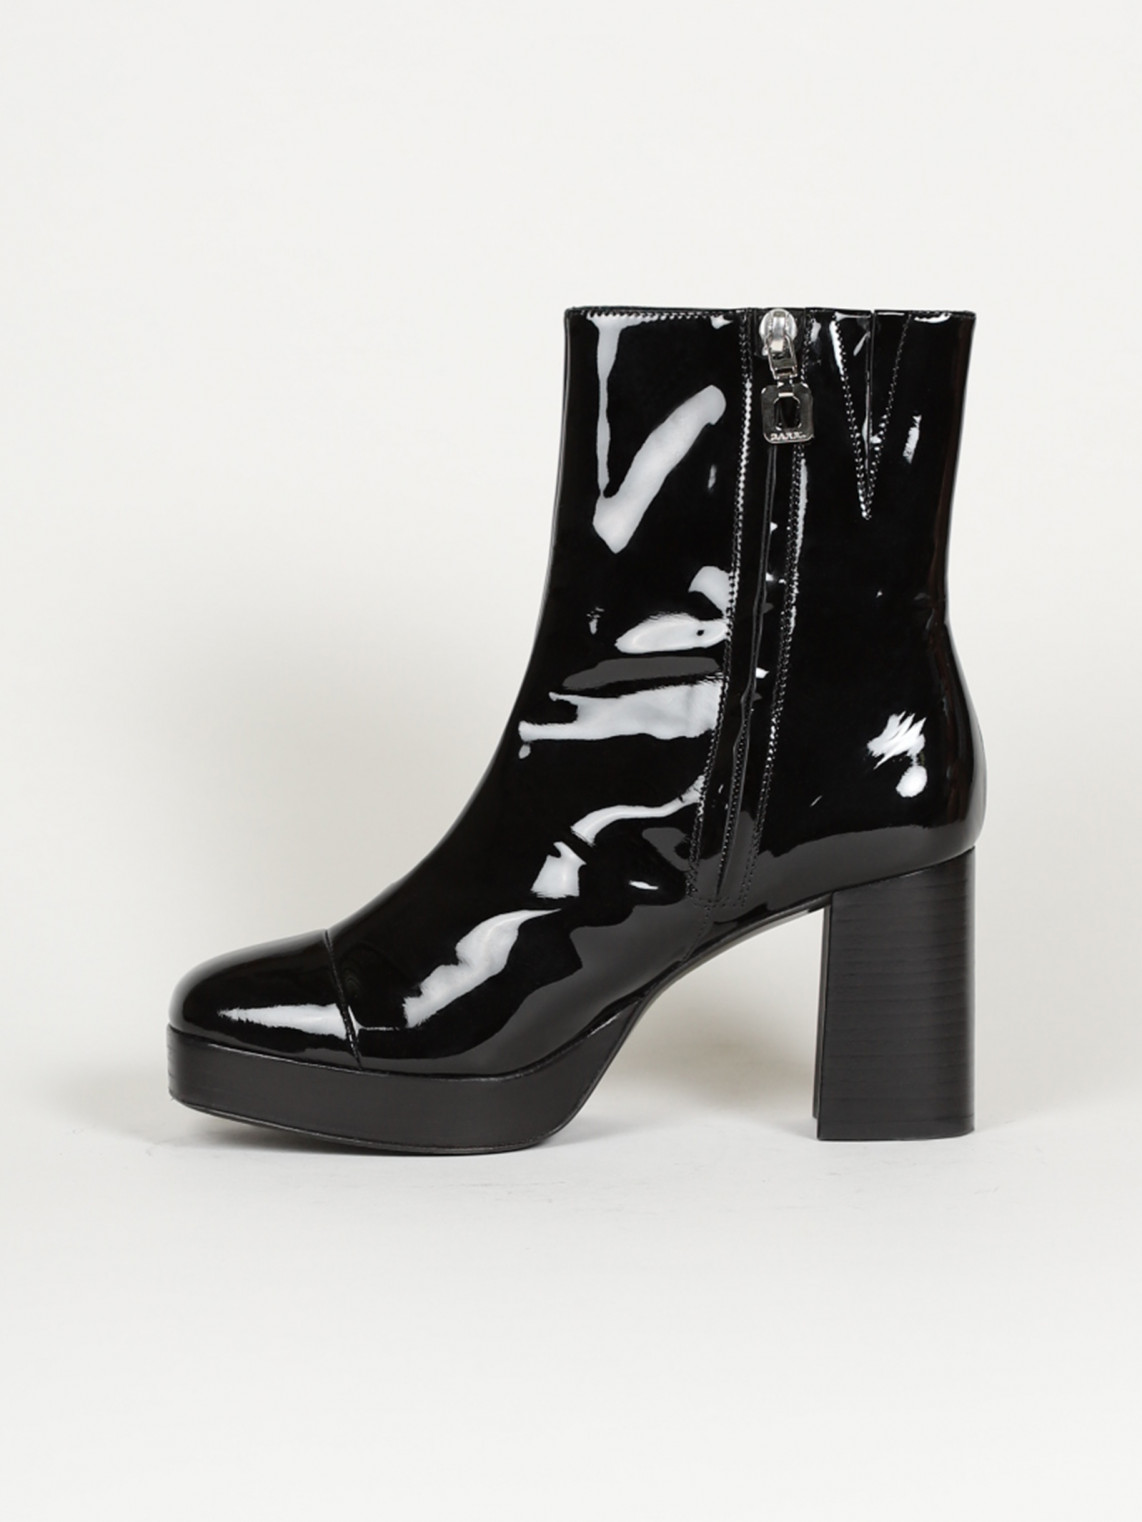 CLUB black patent leather boots | Carel Paris Shoes